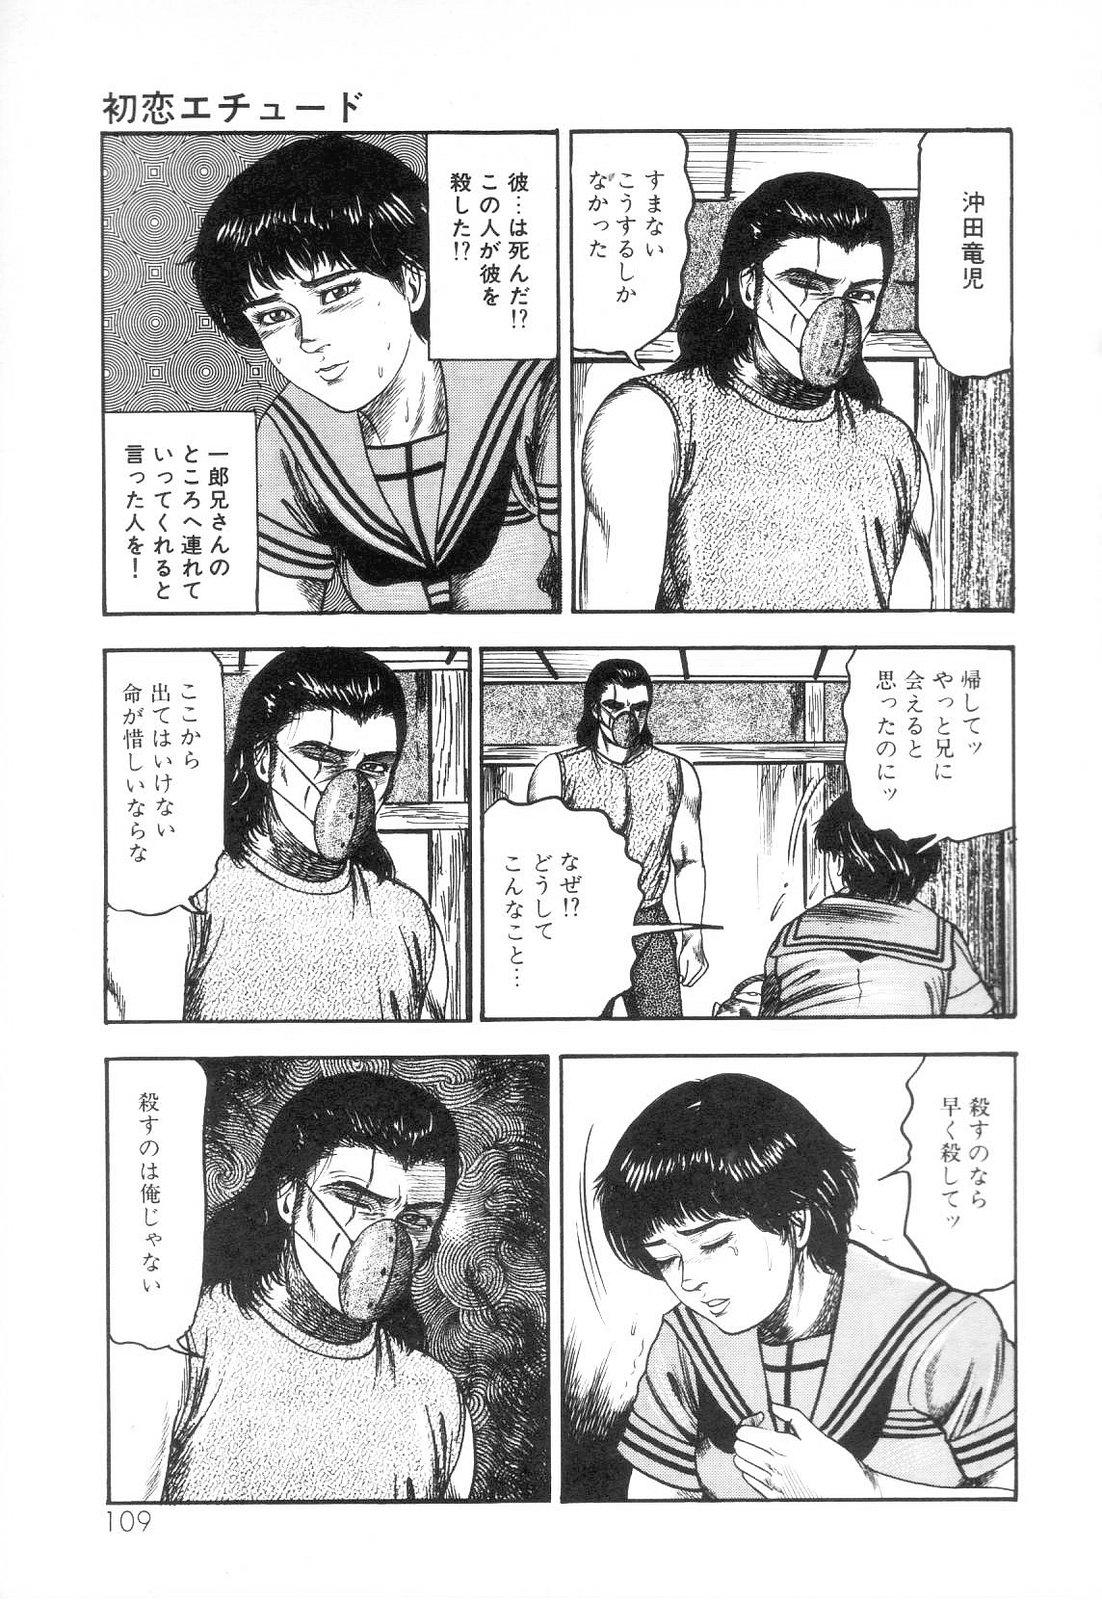 Shiro no Mokushiroku Vol. 3 - Reisai Miho Hen 110